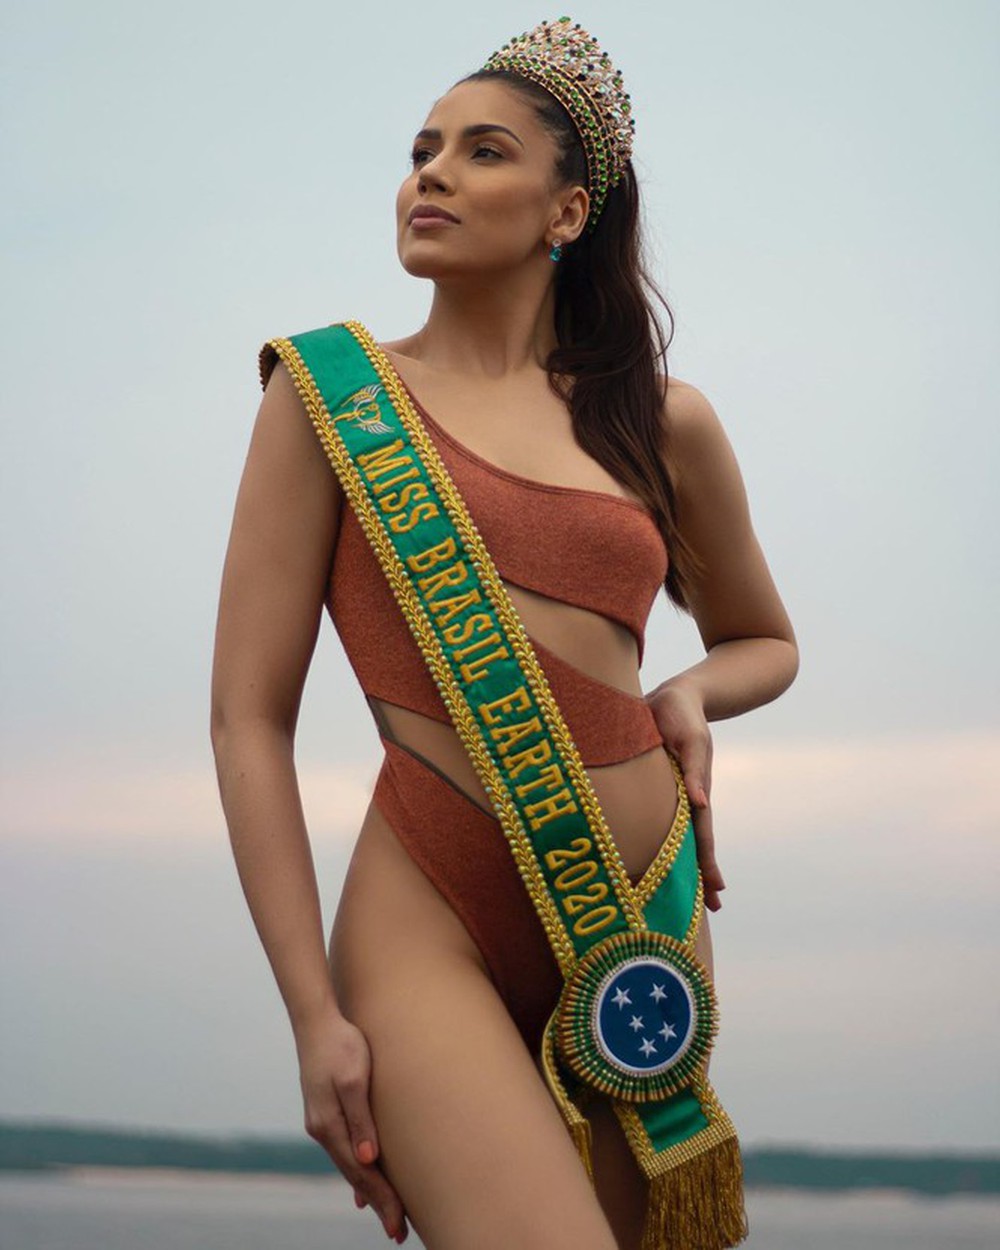 Tân Hoa hậu Trái đất Brazil tung bộ ảnh nóng bỏng mắt với bikini - Ảnh 1.